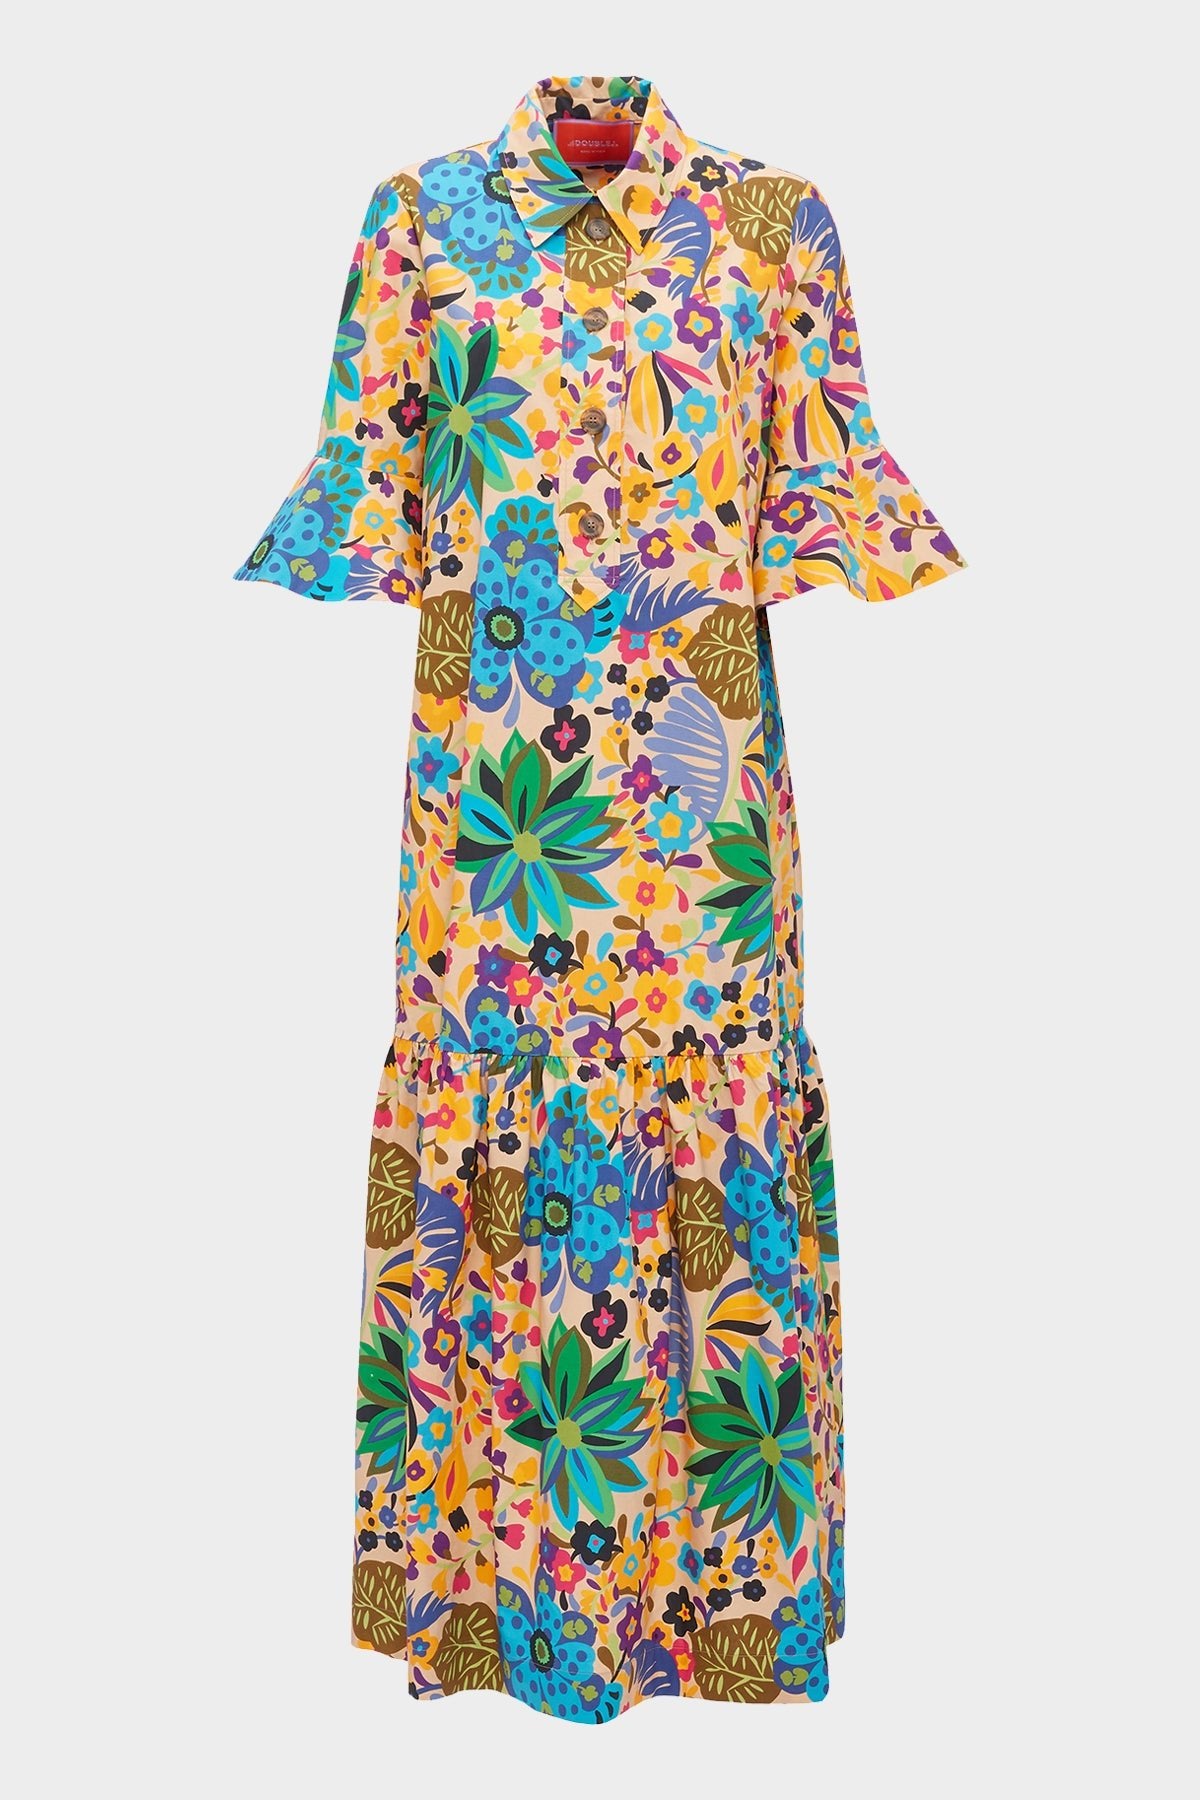 Artemis Dress in Maui - shop-olivia.com